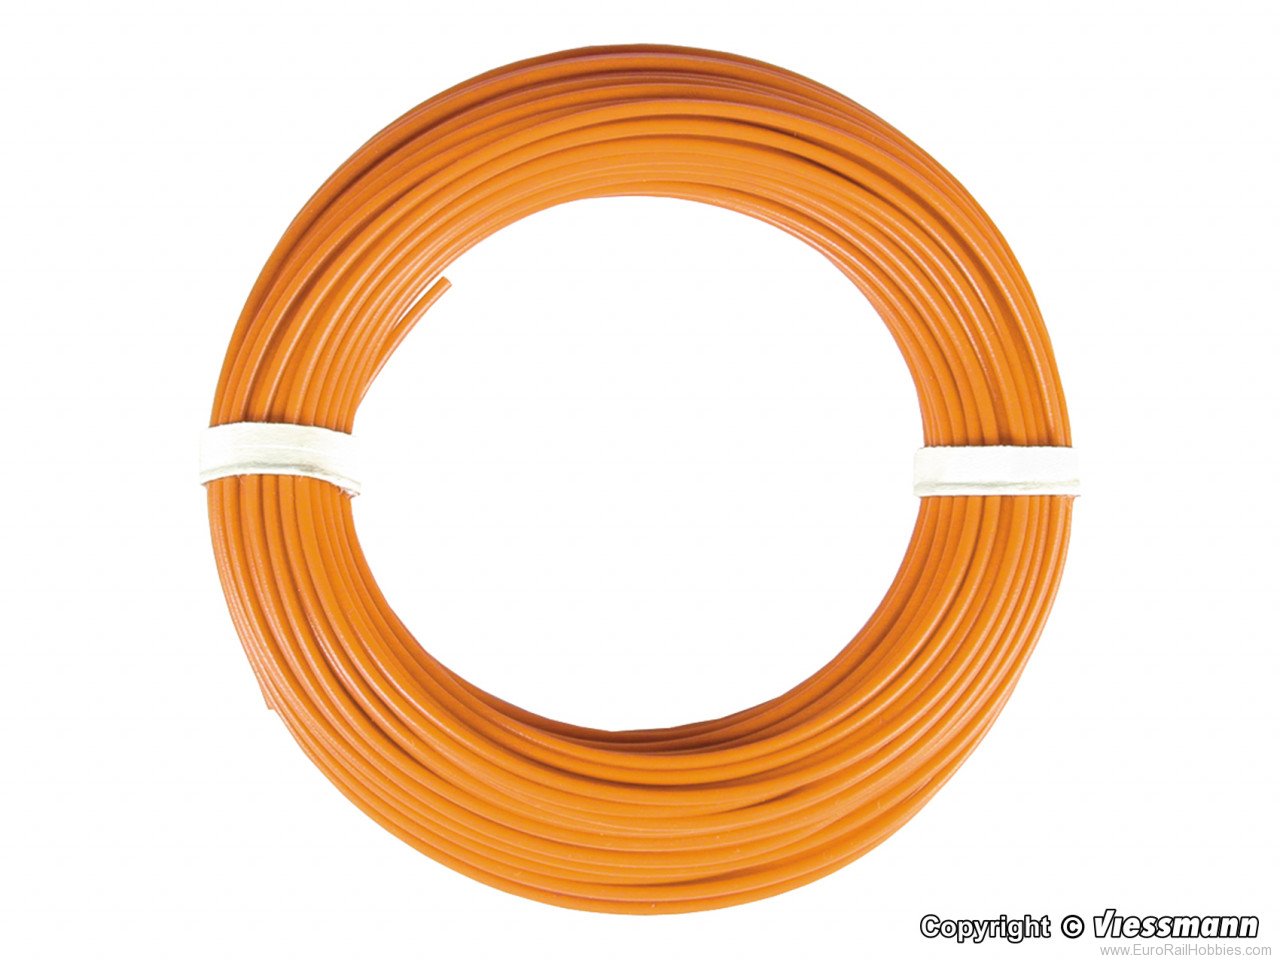 Viessmann 6869 Wire,0,14 mm dia., orange, 10 m